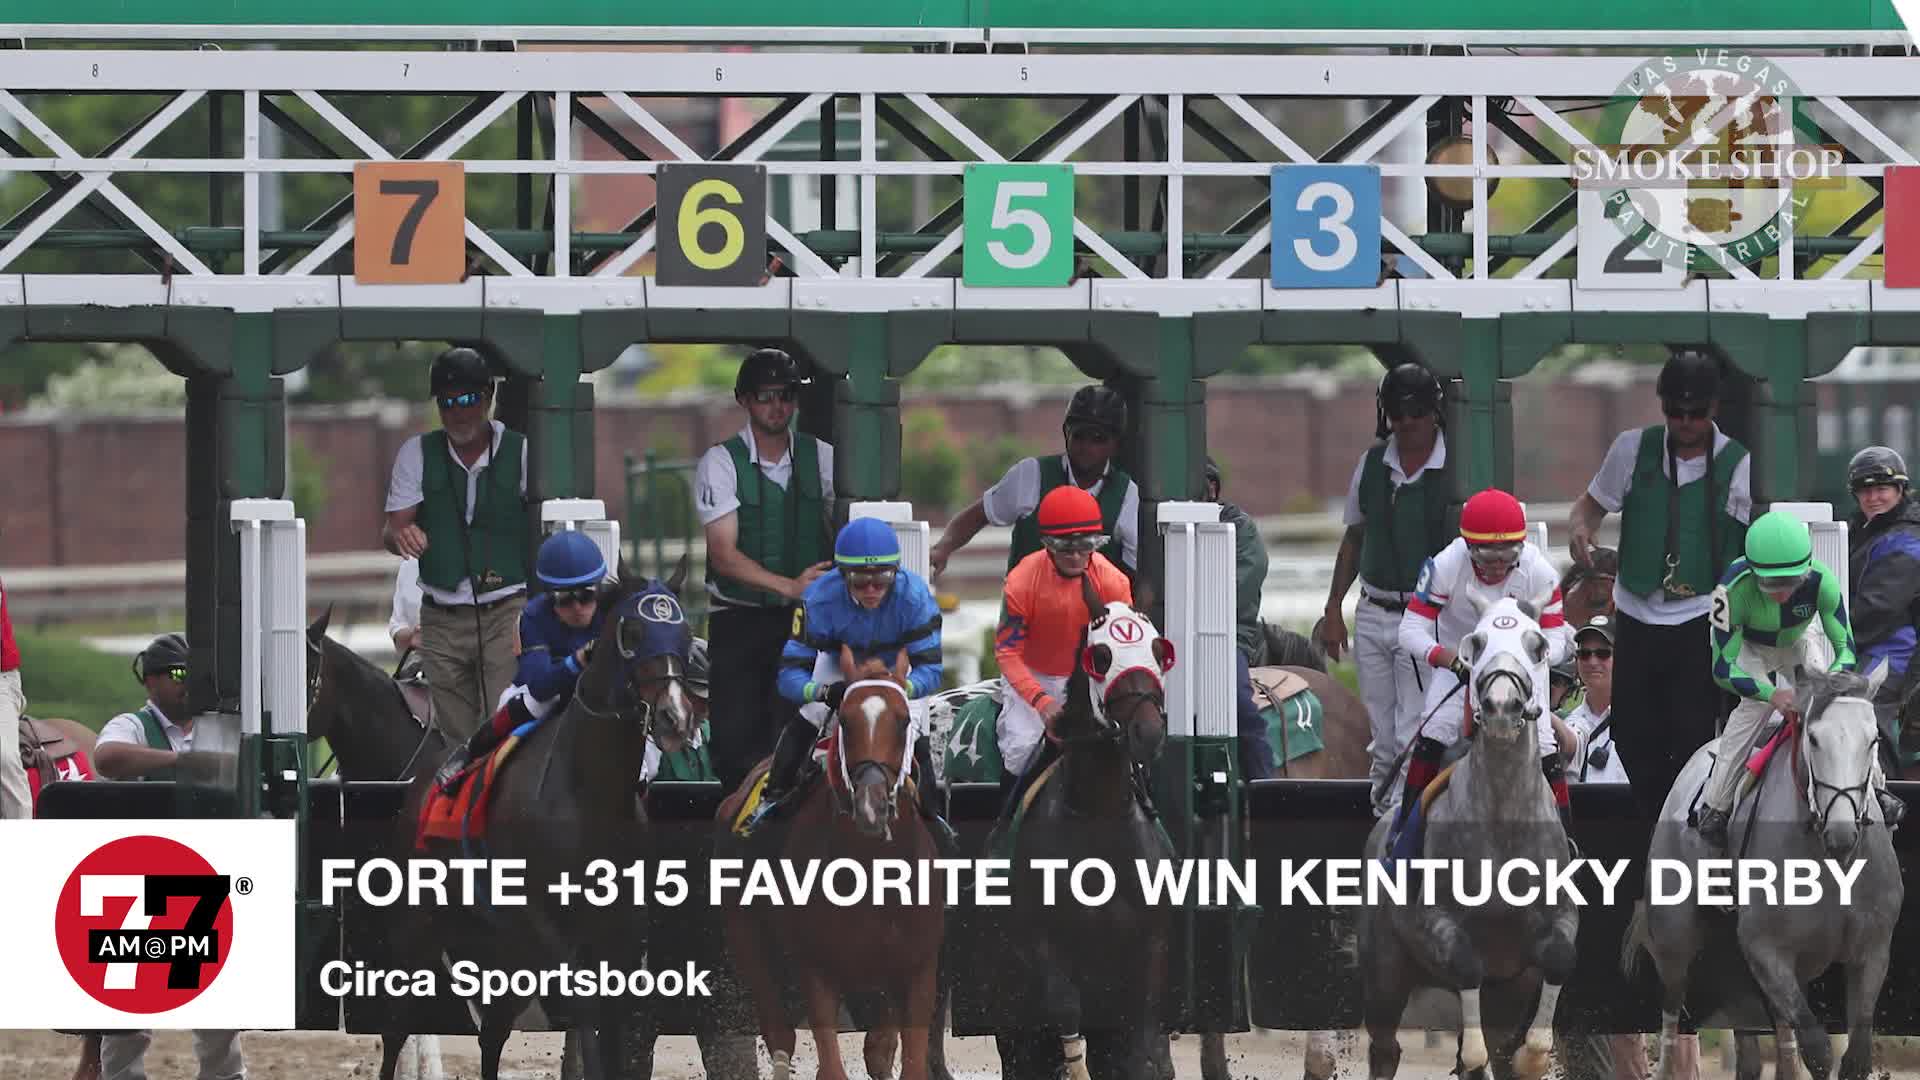 Forte plus 315 favorite to win Kentucky Derby